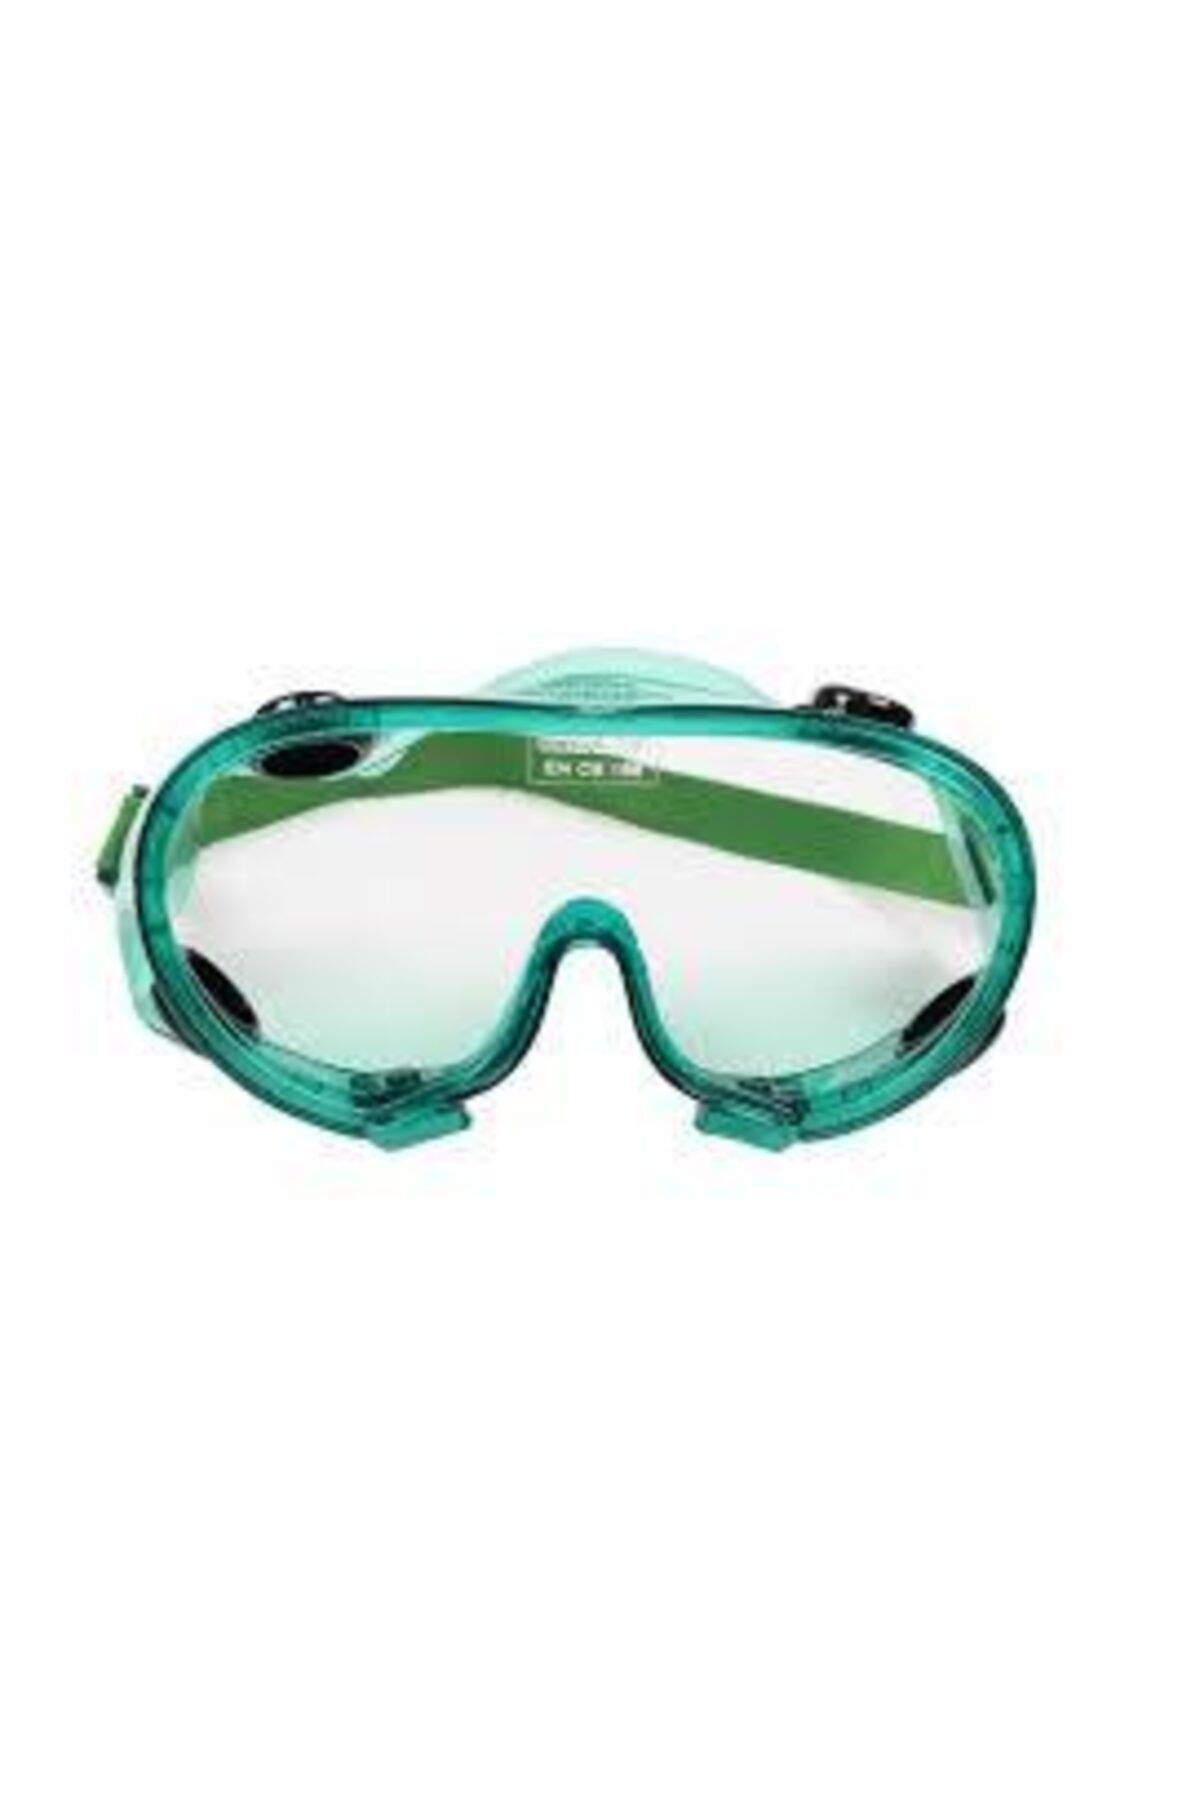 Sembol Yeşil Şeffaf Koruyucu Buğulanmaz Gözlük S-550